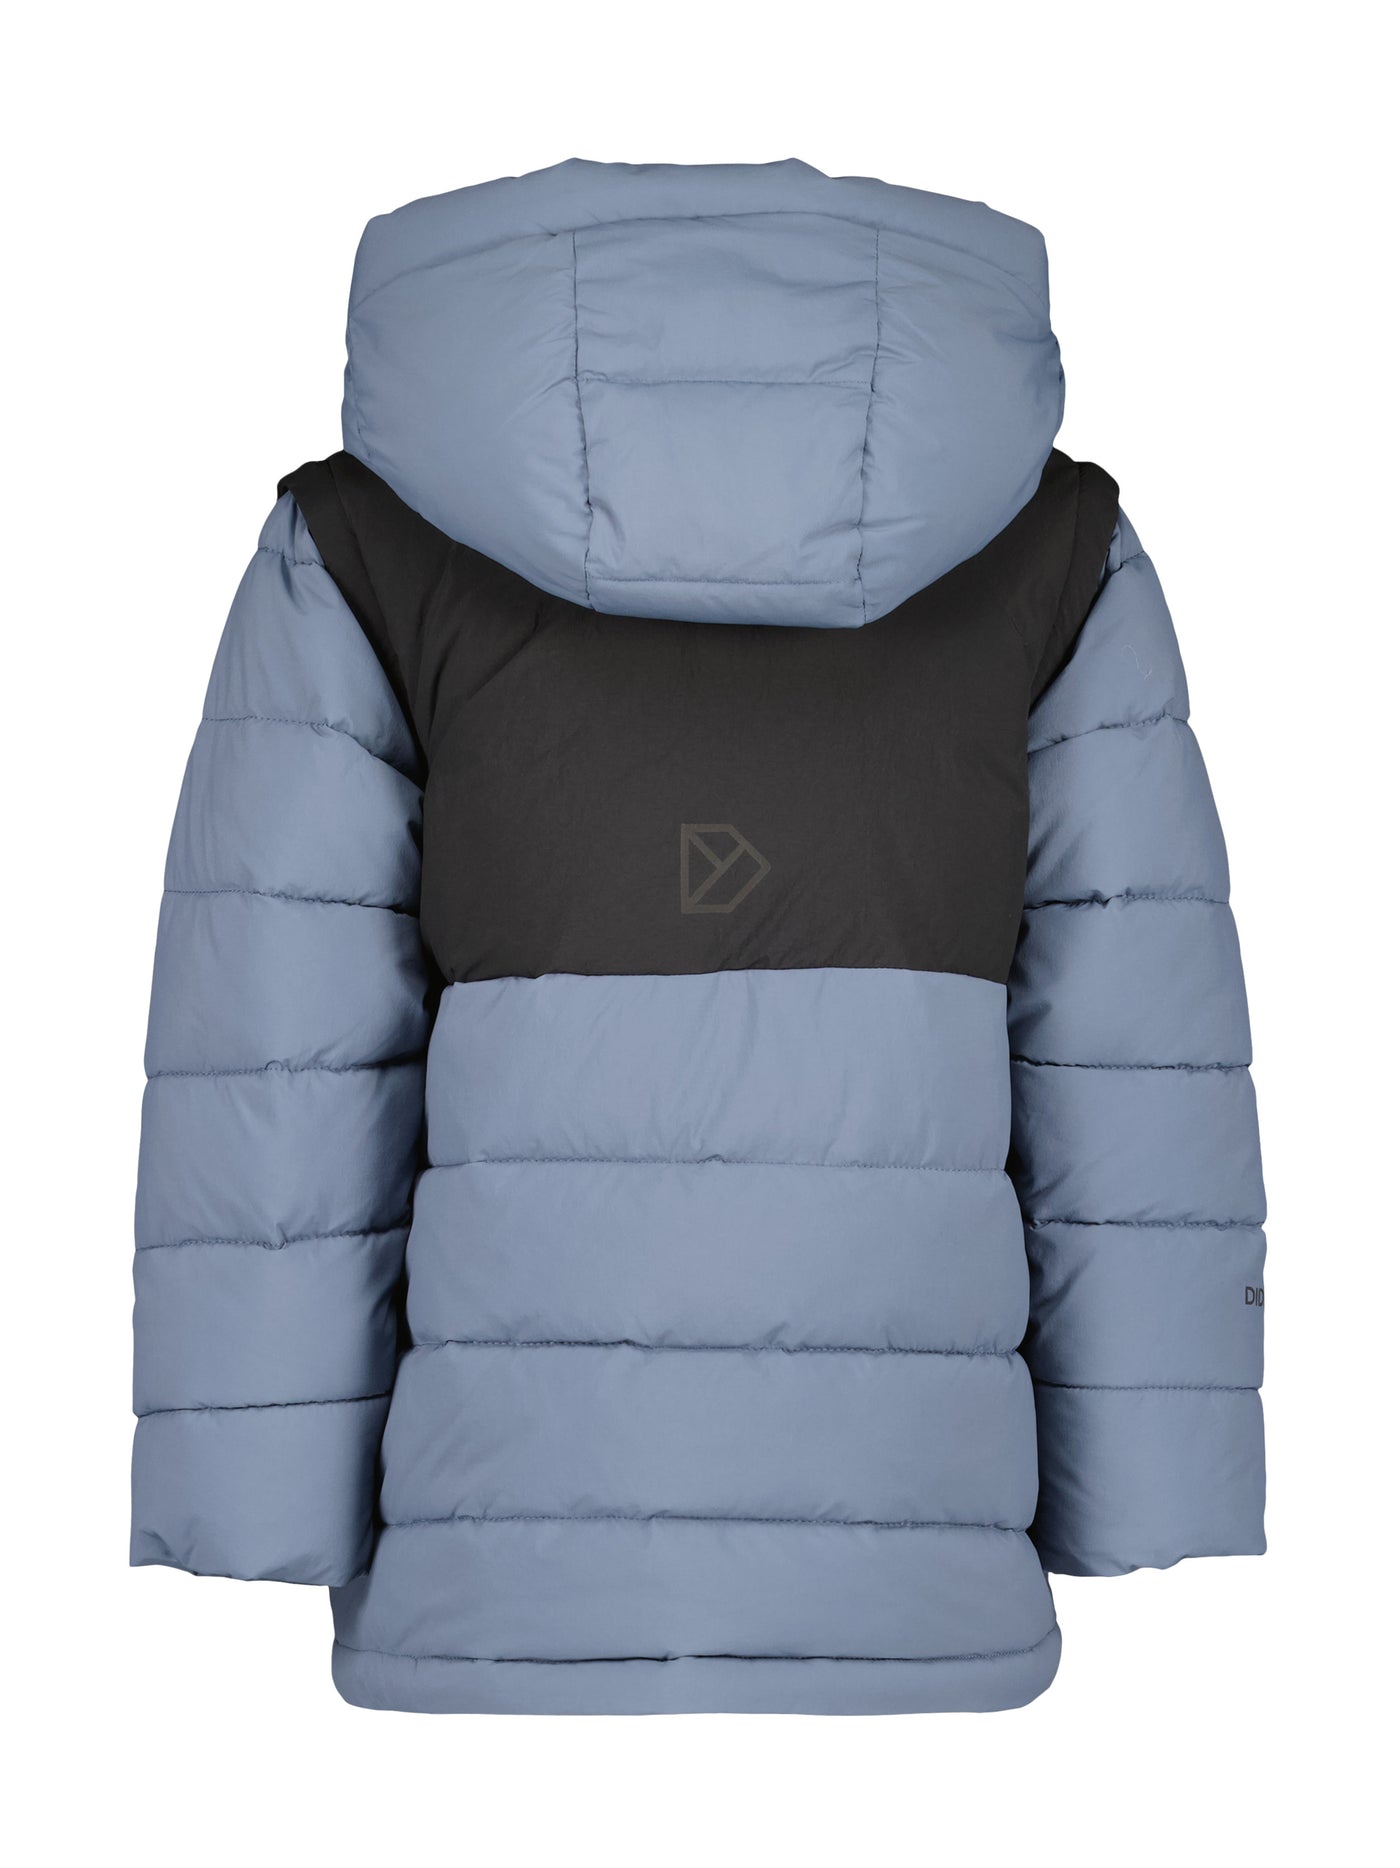 Granite Kids' Jacket - 2in1 Top-Jacke für Kinder und Jugendliche